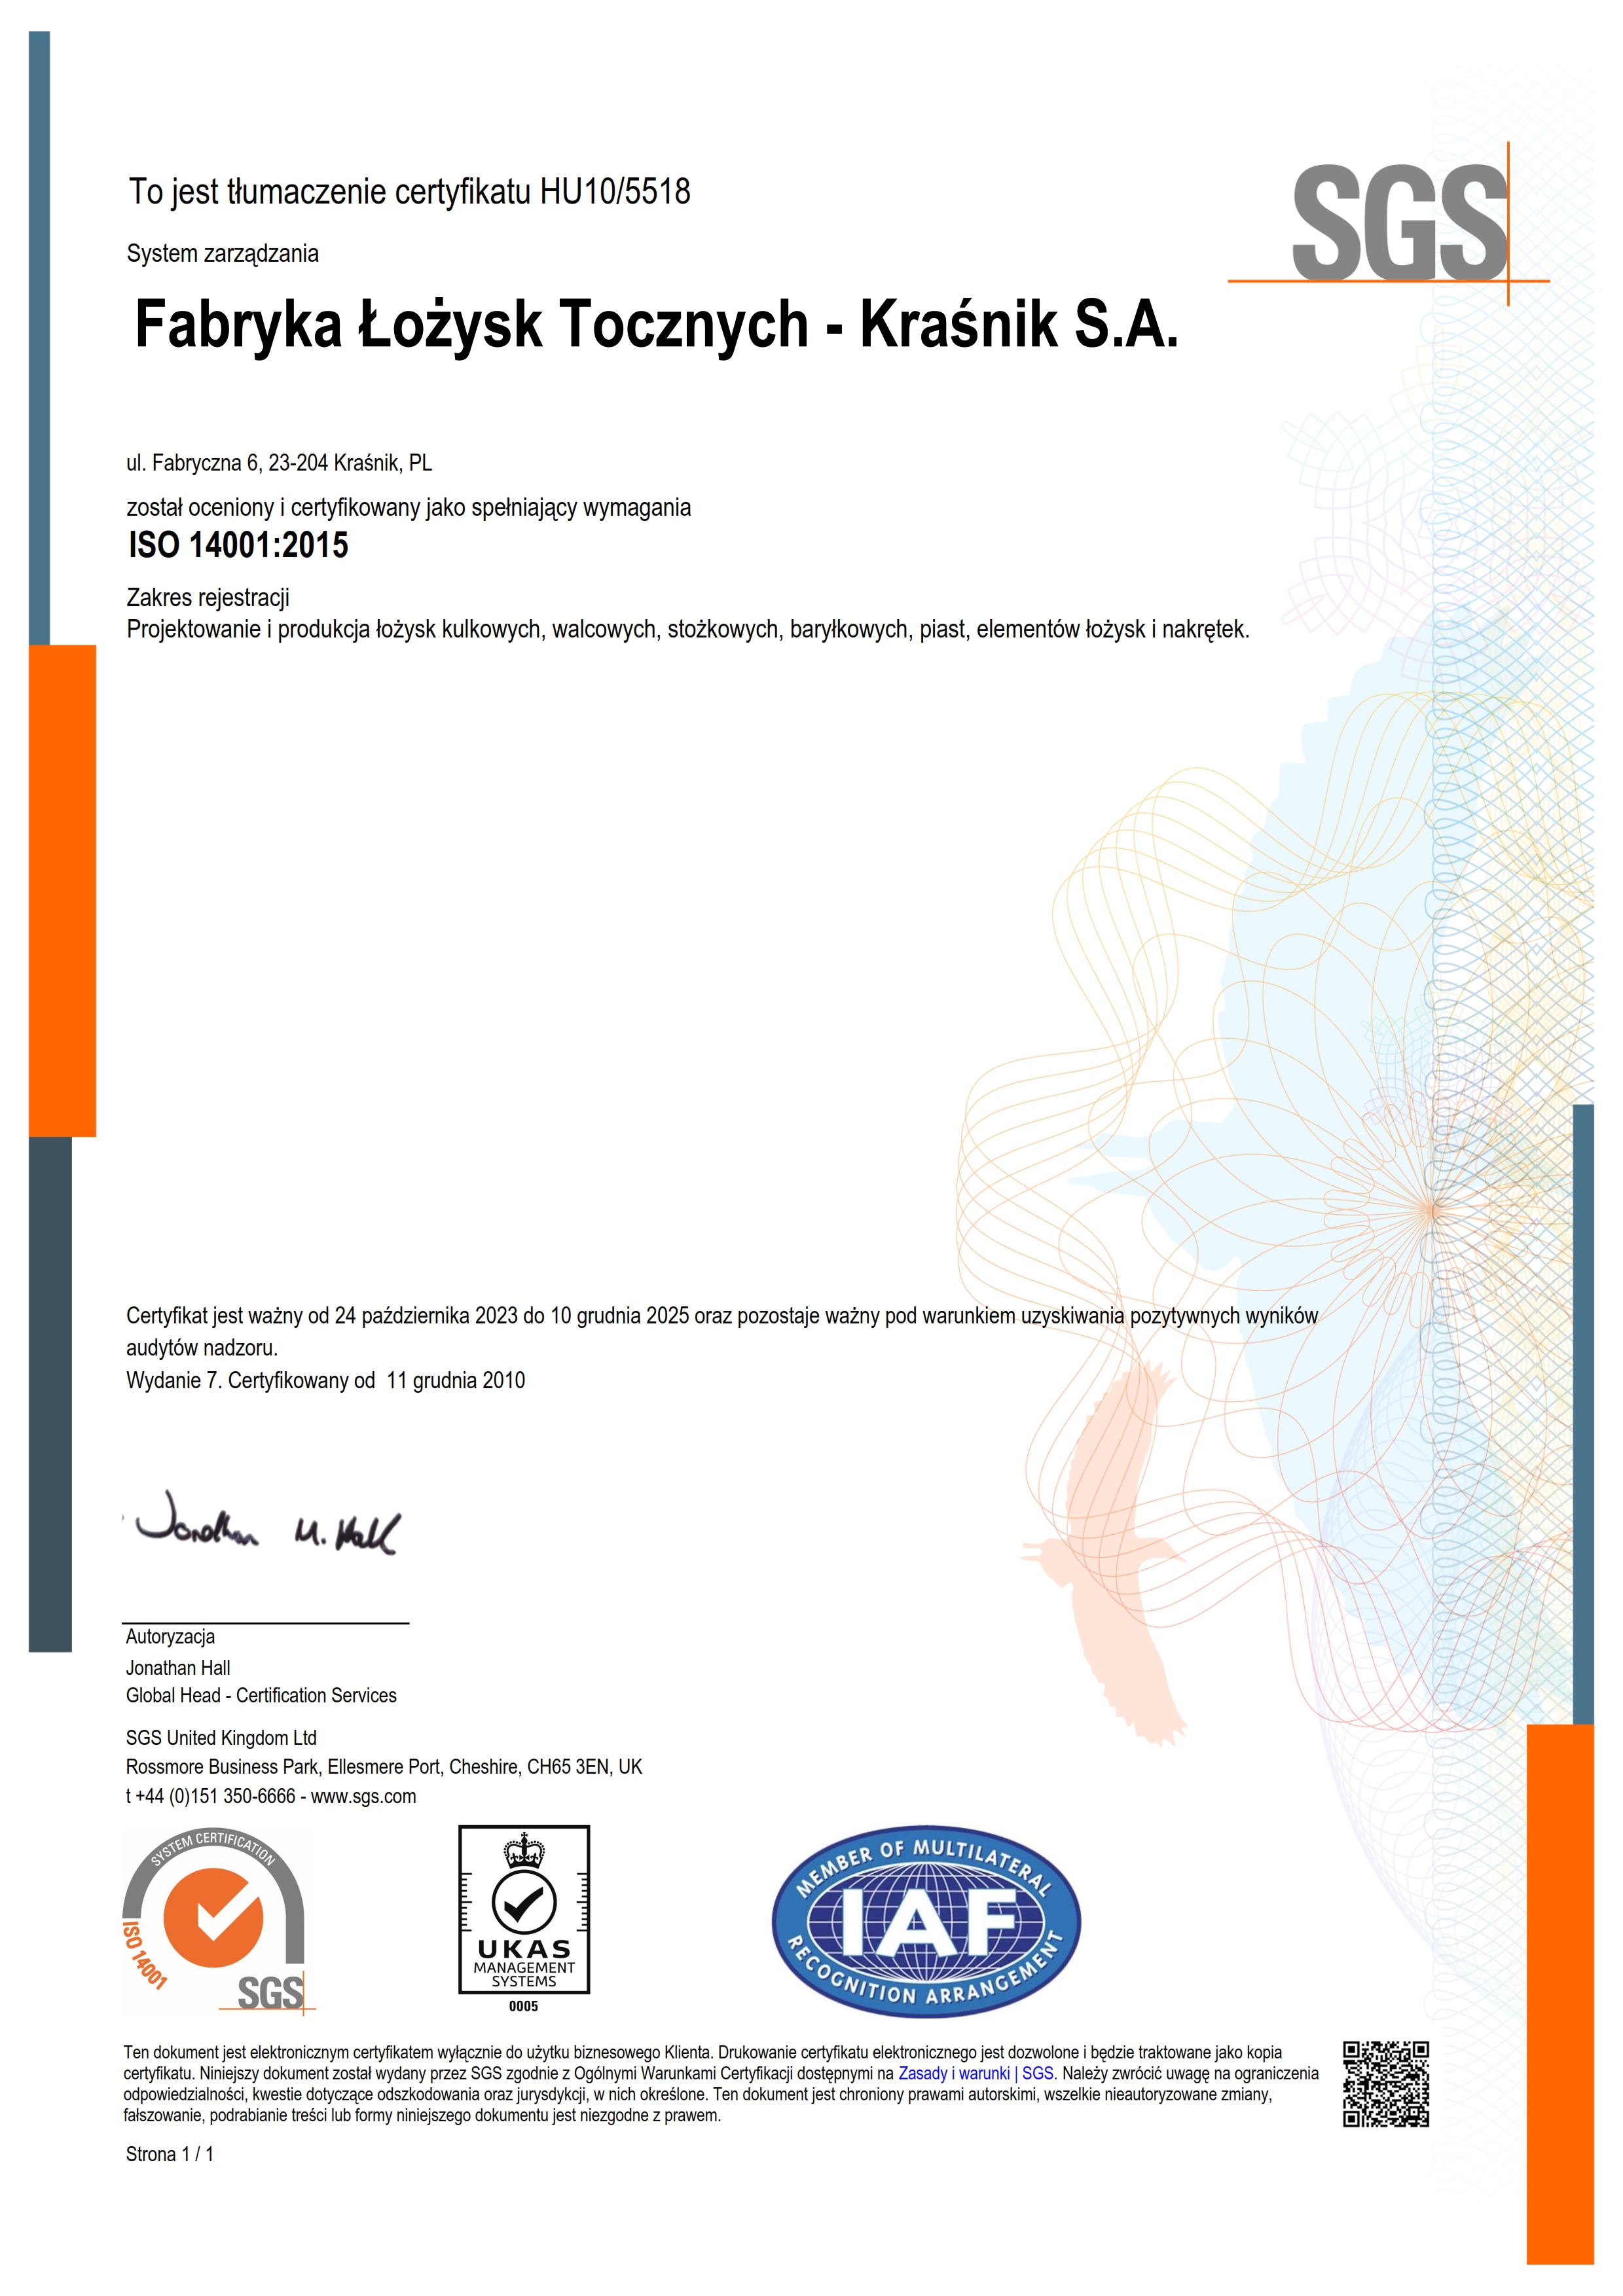 FLT Krasnik ISO14001 certificate pl 2023